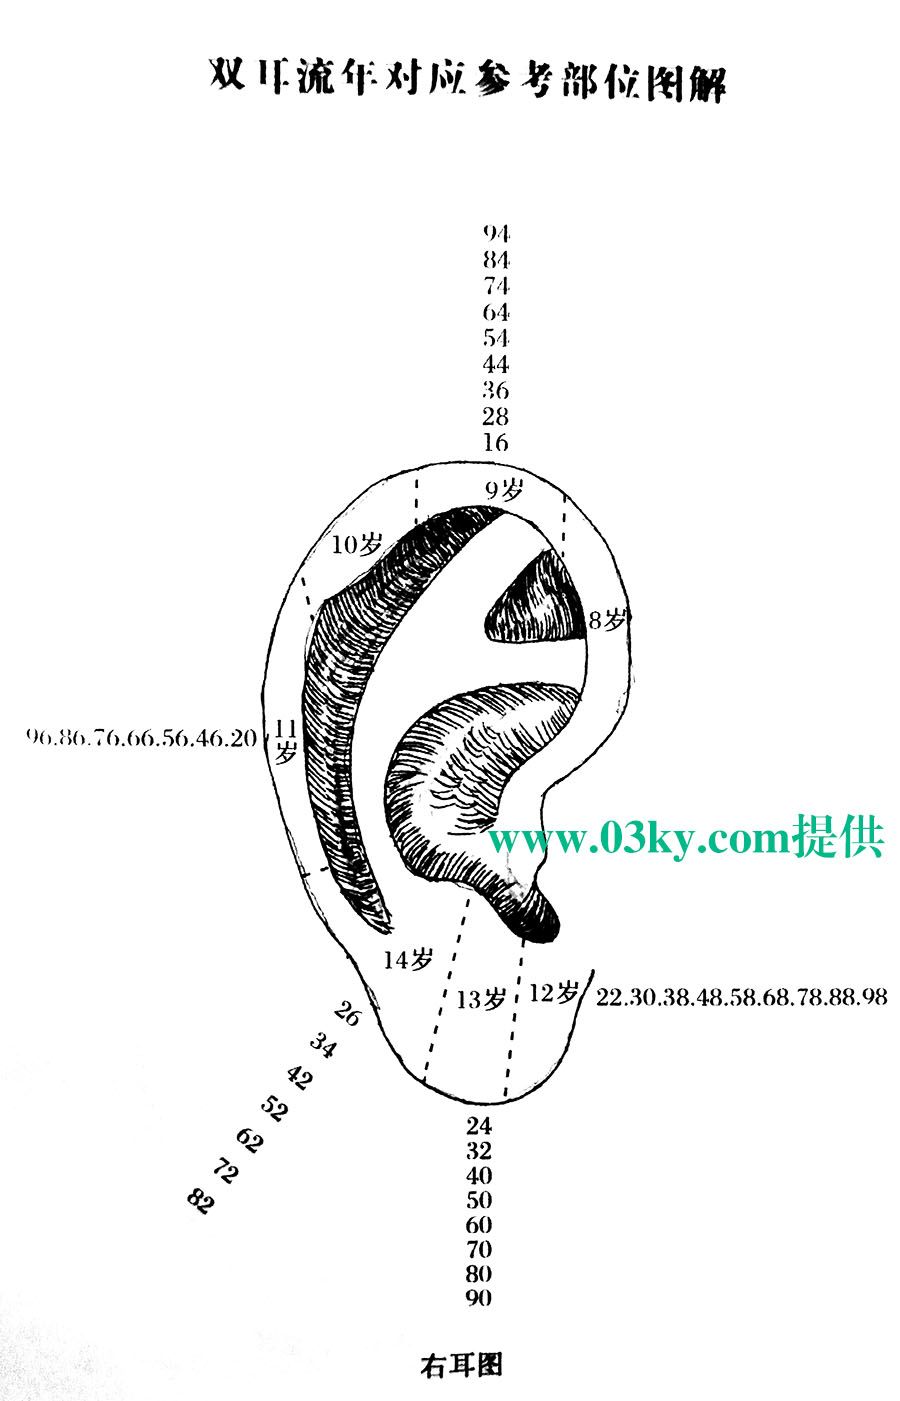 骆驼相法(论耳）左耳代表1-7岁、右耳代表8-15岁